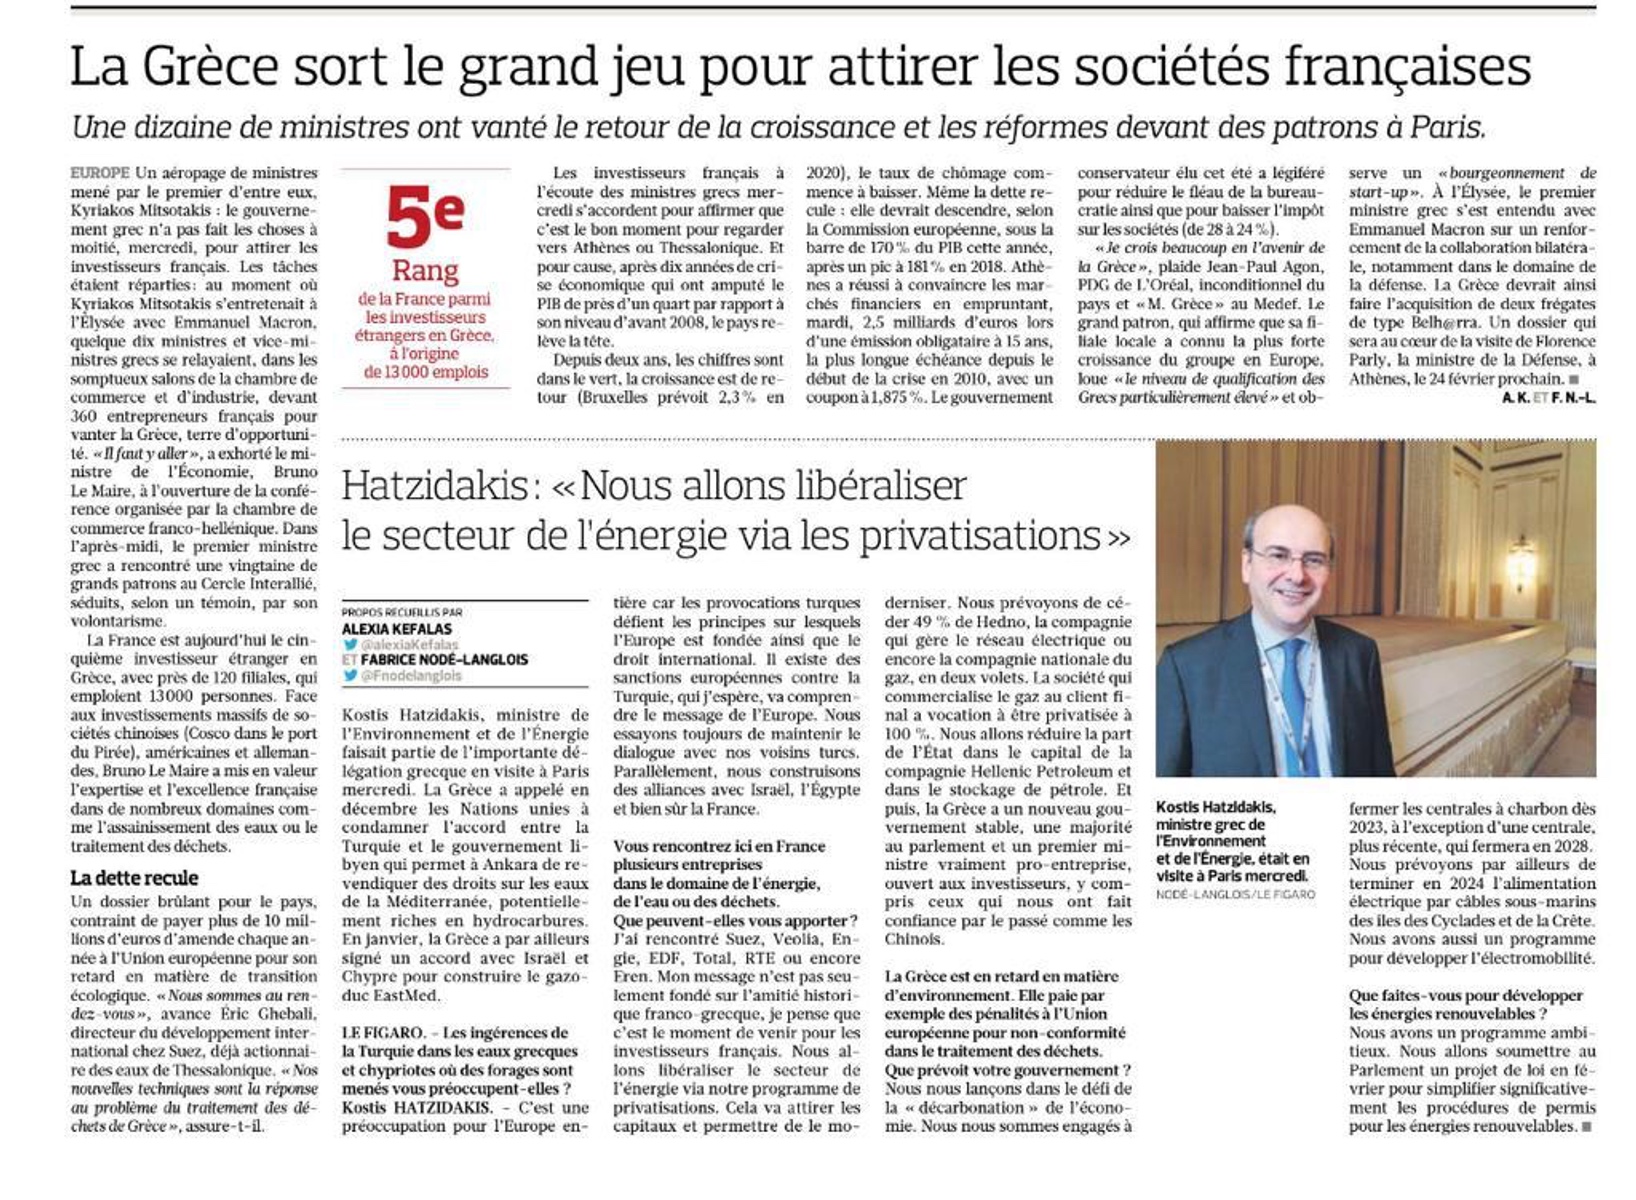 Χατζηδάκης στην Le Figaro: Προσκλητήριο για επενδύσεις στην Ελλάδα σε Γάλλους επενδυτές